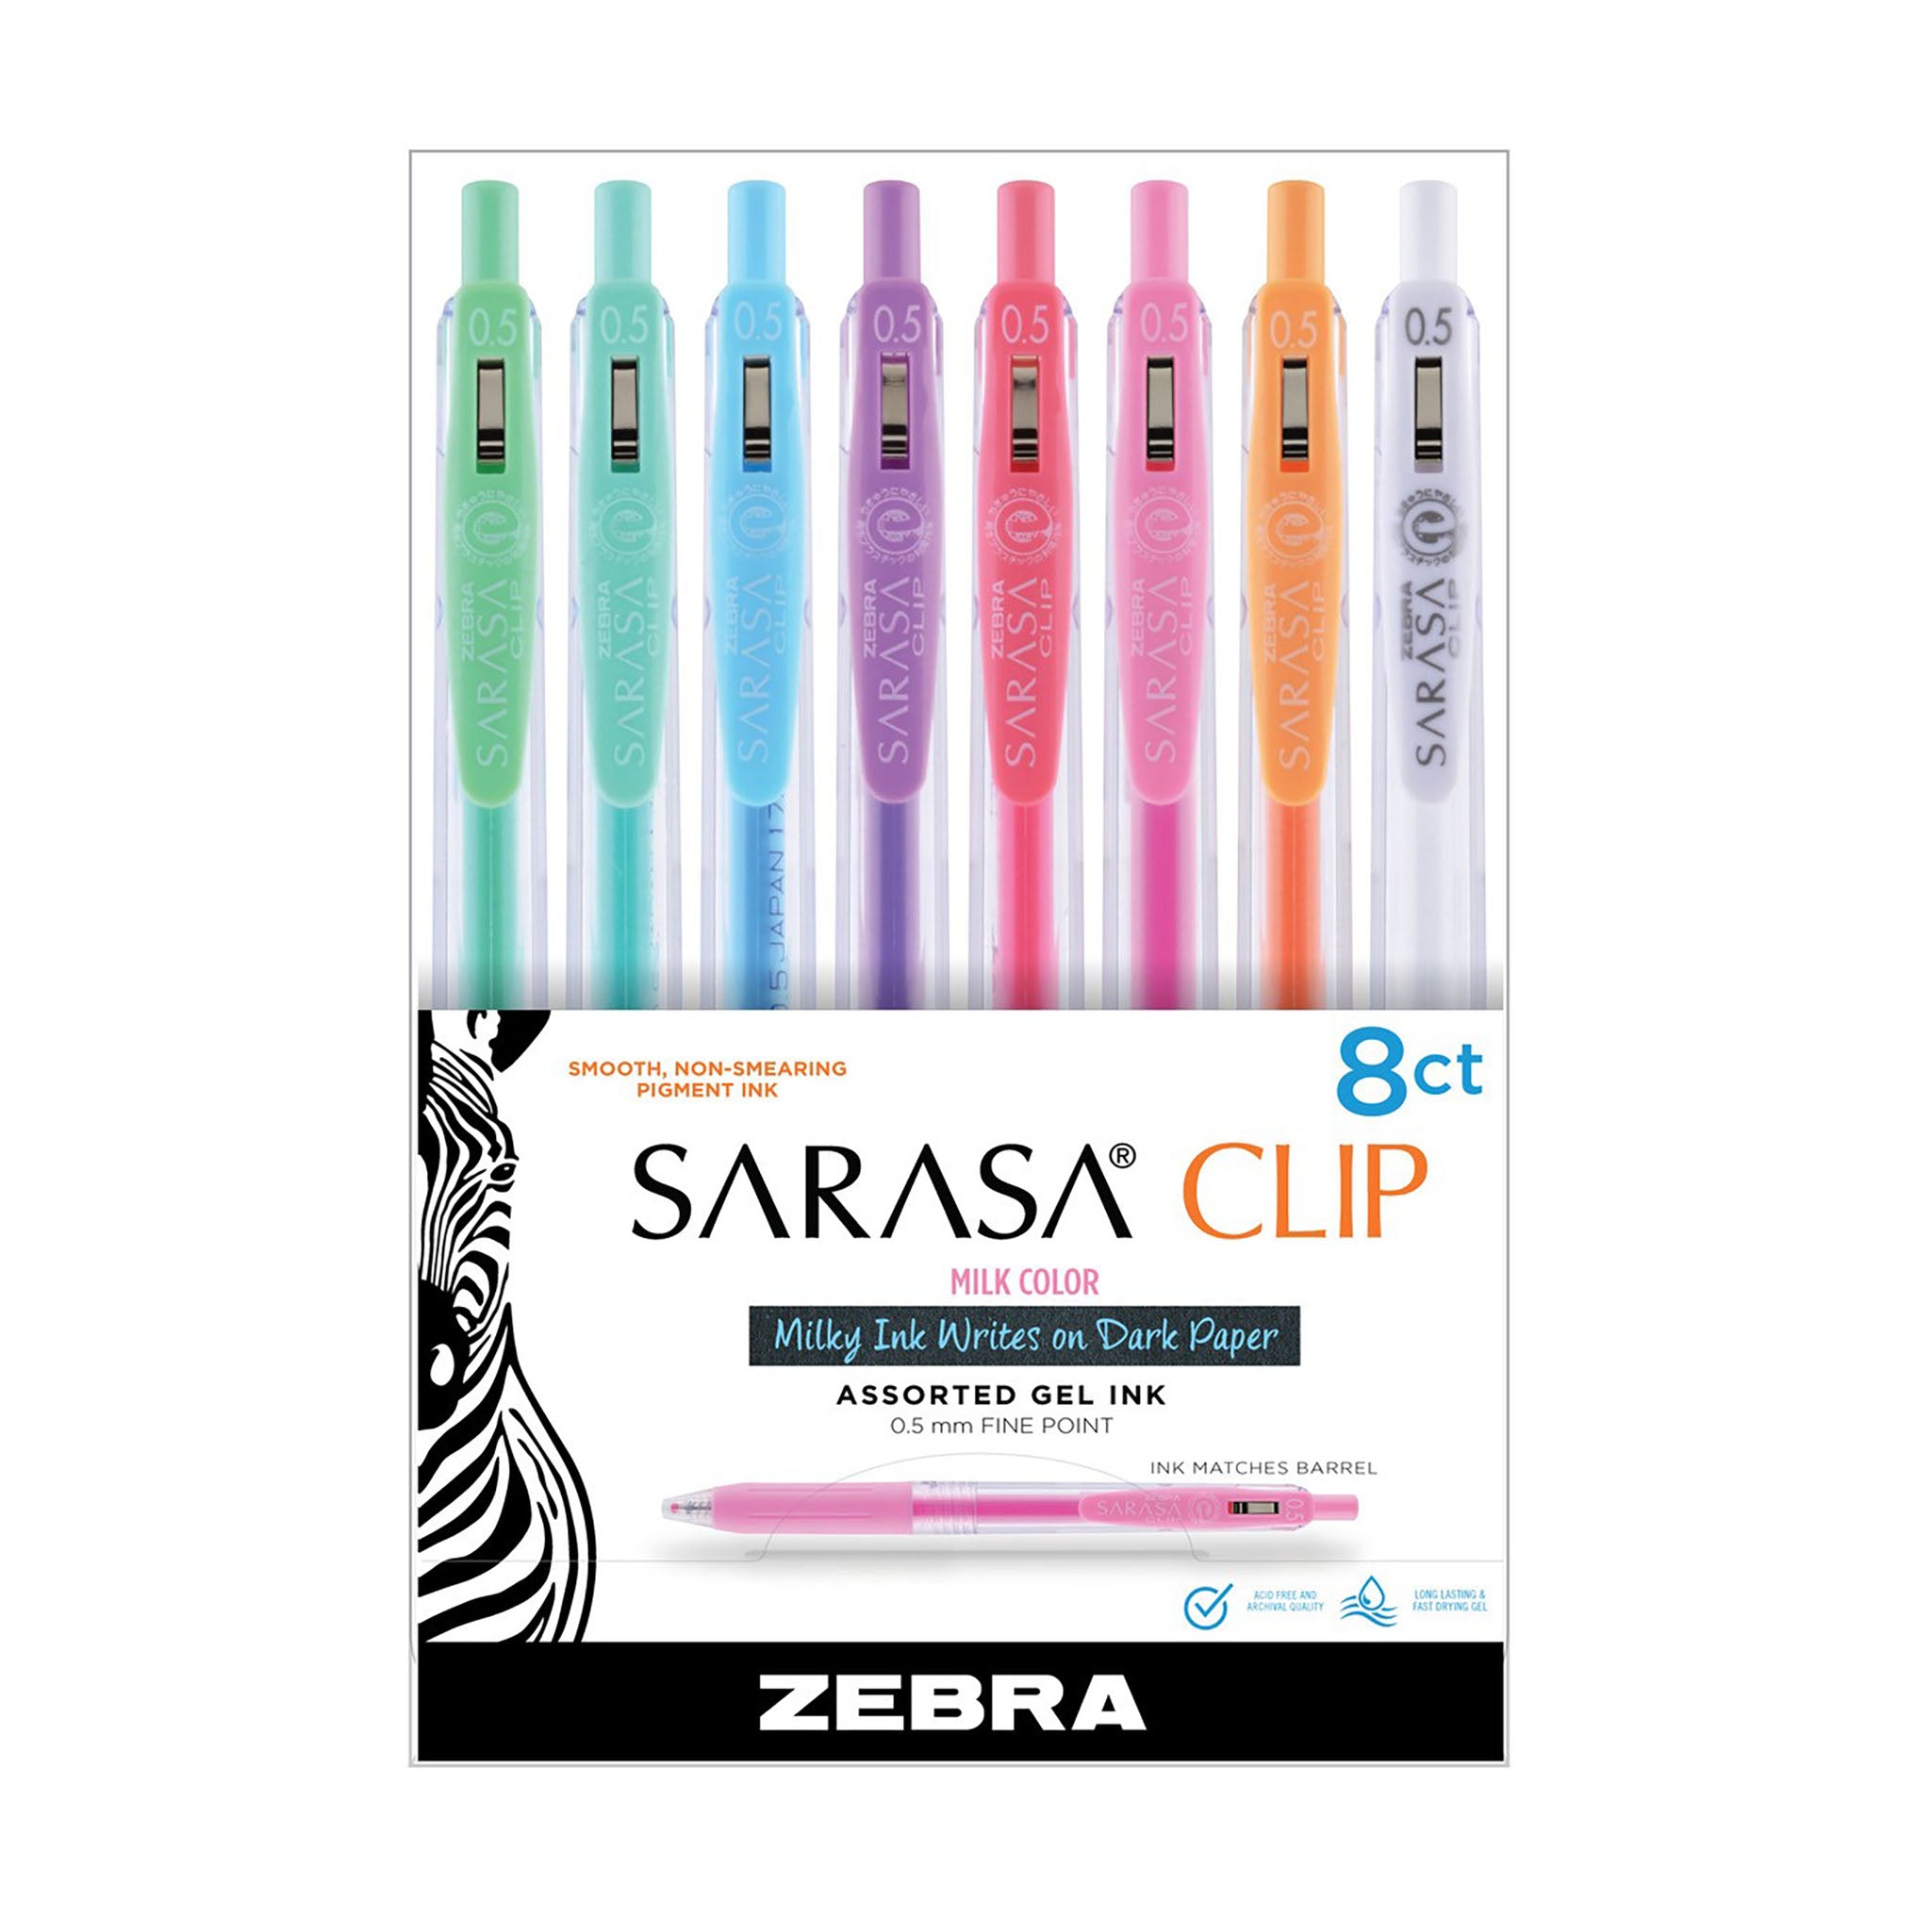 SARASA Clip Gel Retractable